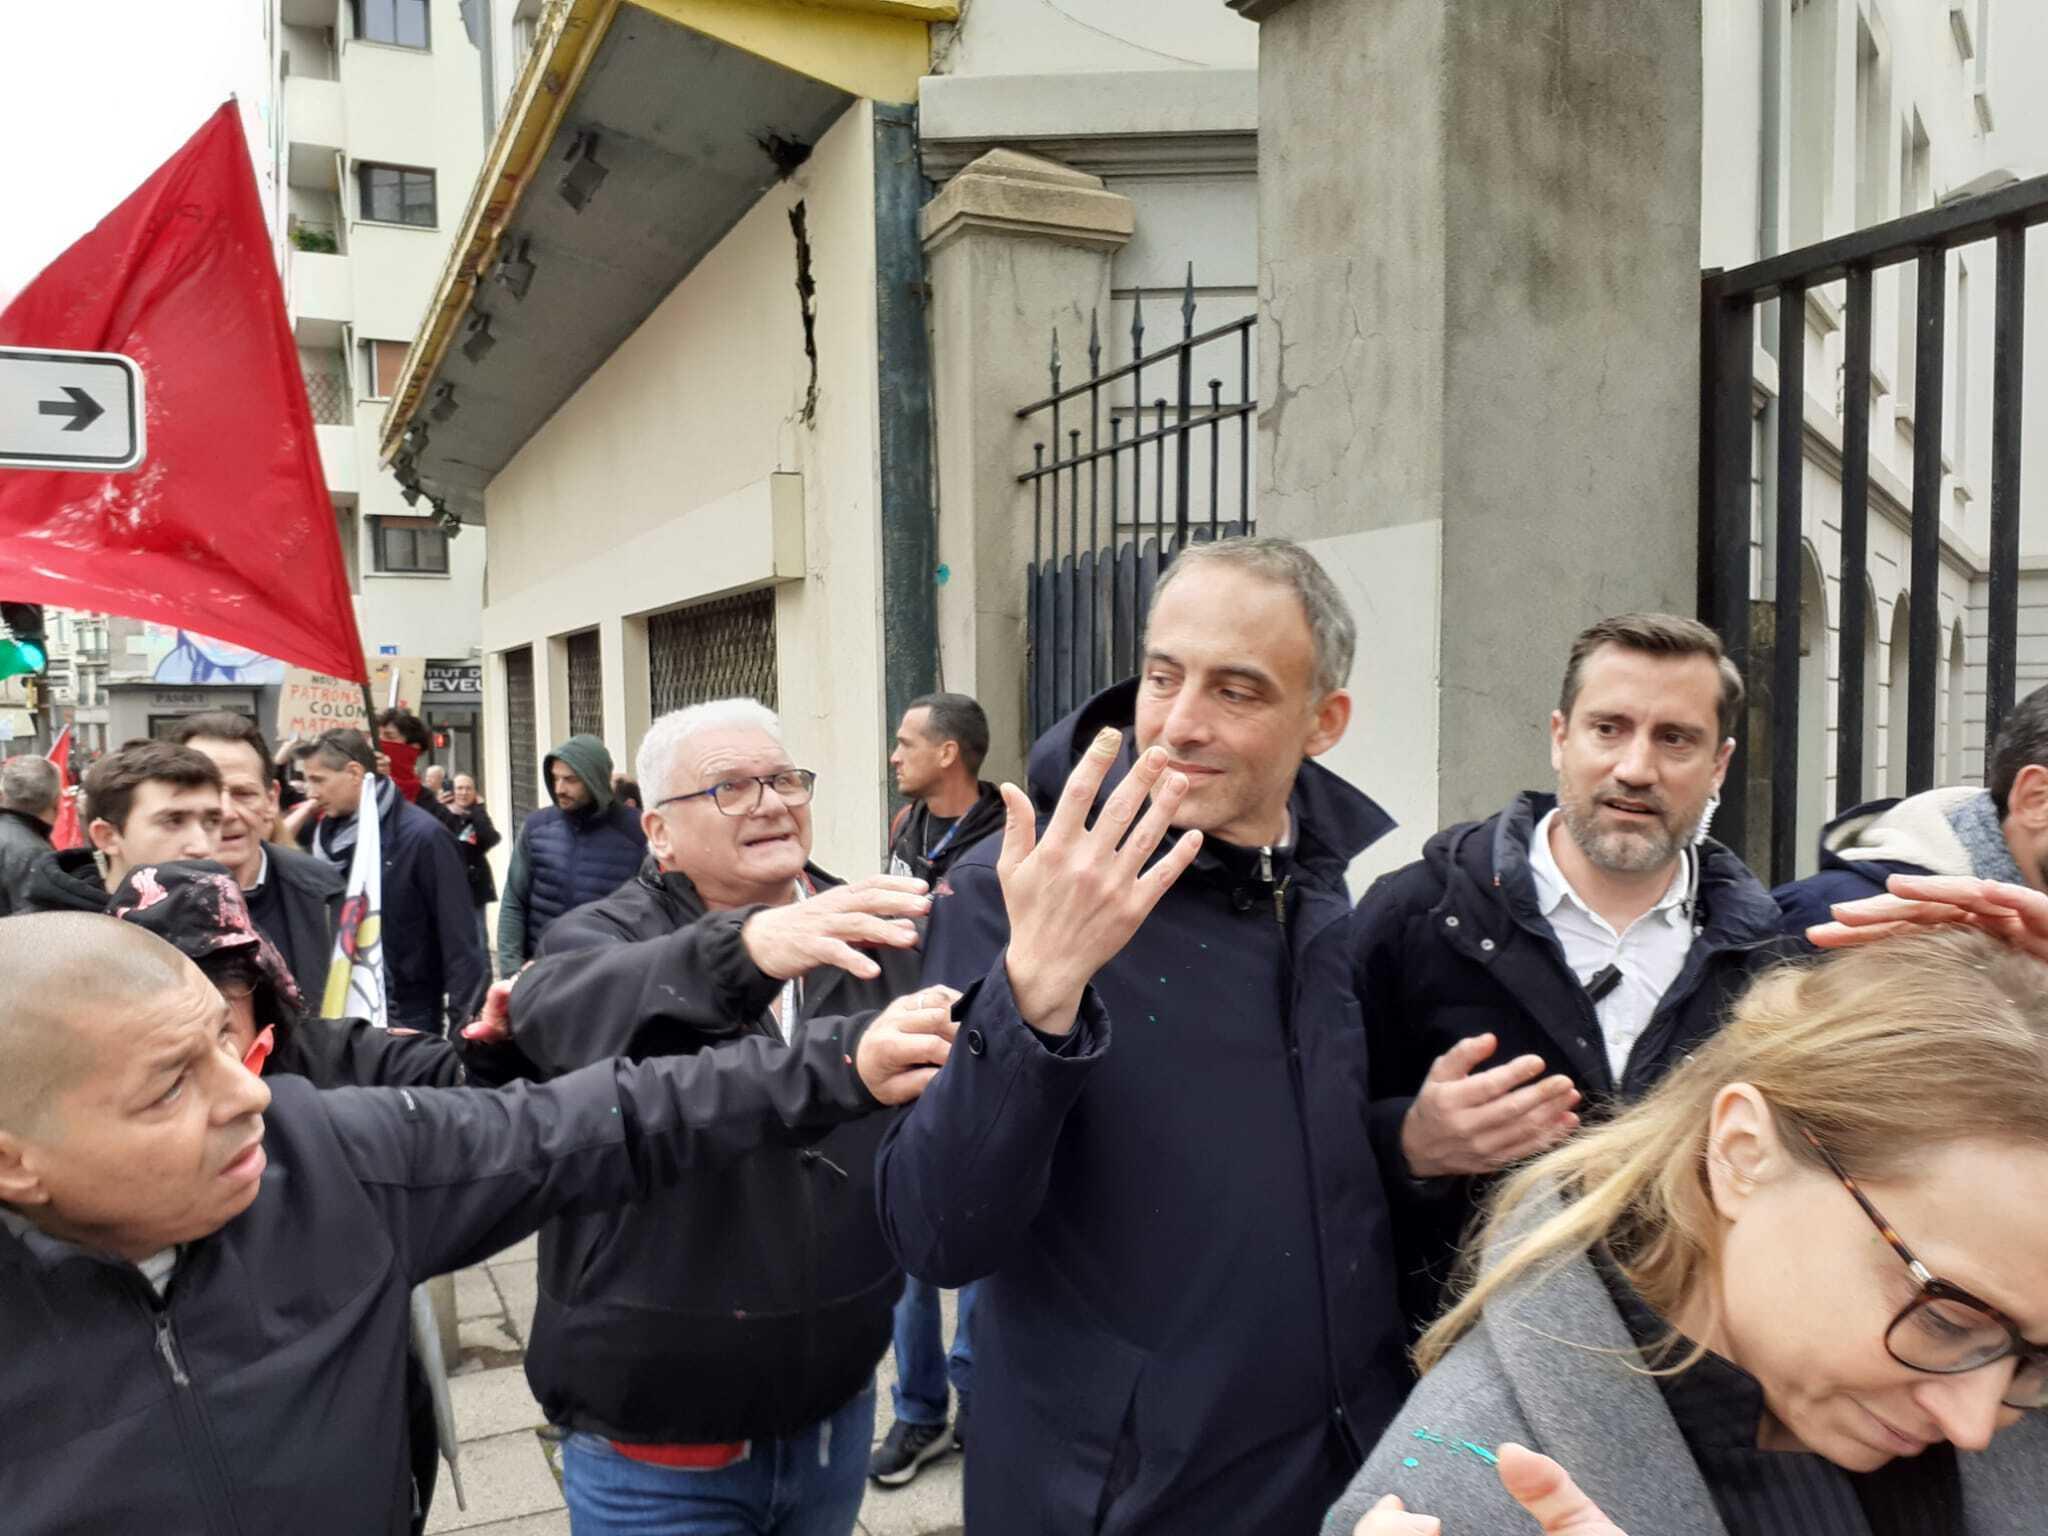 La tête de liste socialiste aux élections européennes Raphaël Glucksmann a été pris à partie ce 1er mai à Saint-Etienne. Radio France/Louise Thomann